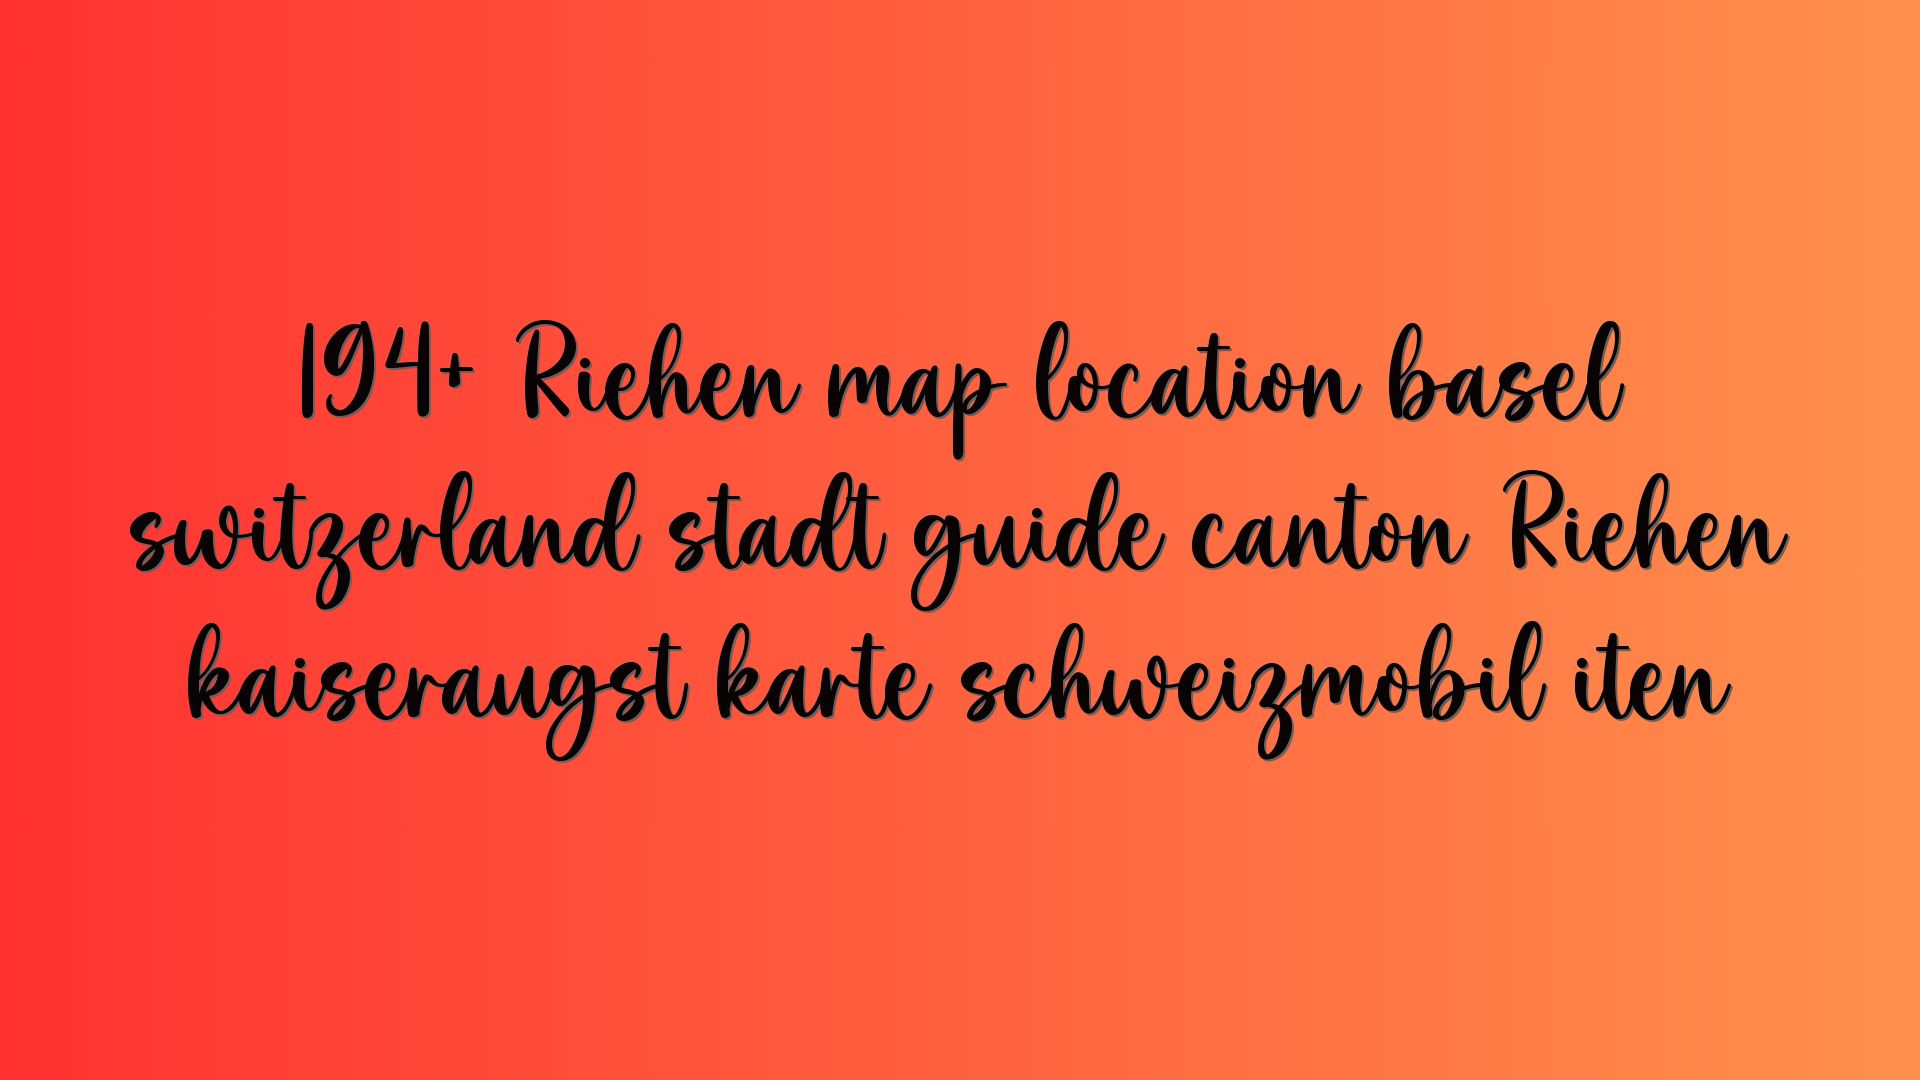 194+ Riehen map location basel switzerland stadt guide canton Riehen kaiseraugst karte schweizmobil iten